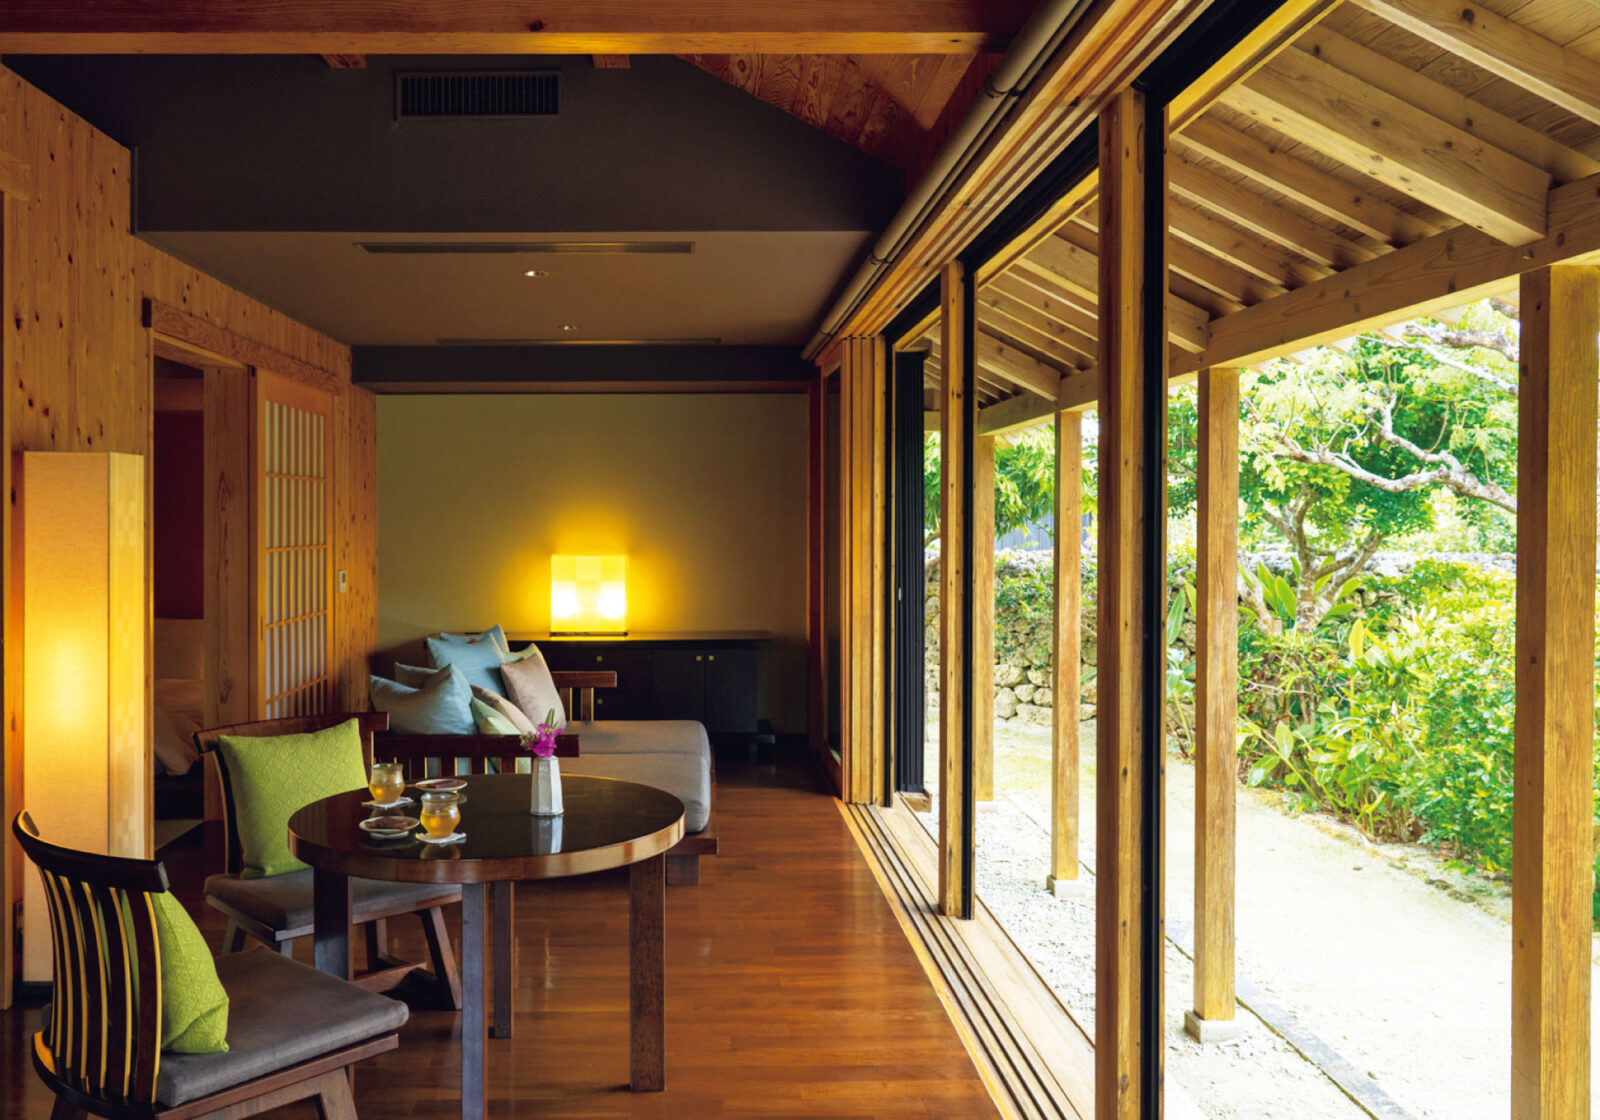 建物の構造や庭の造りなど、竹富島の伝統的な民家を踏襲した〈星のや〉の客室